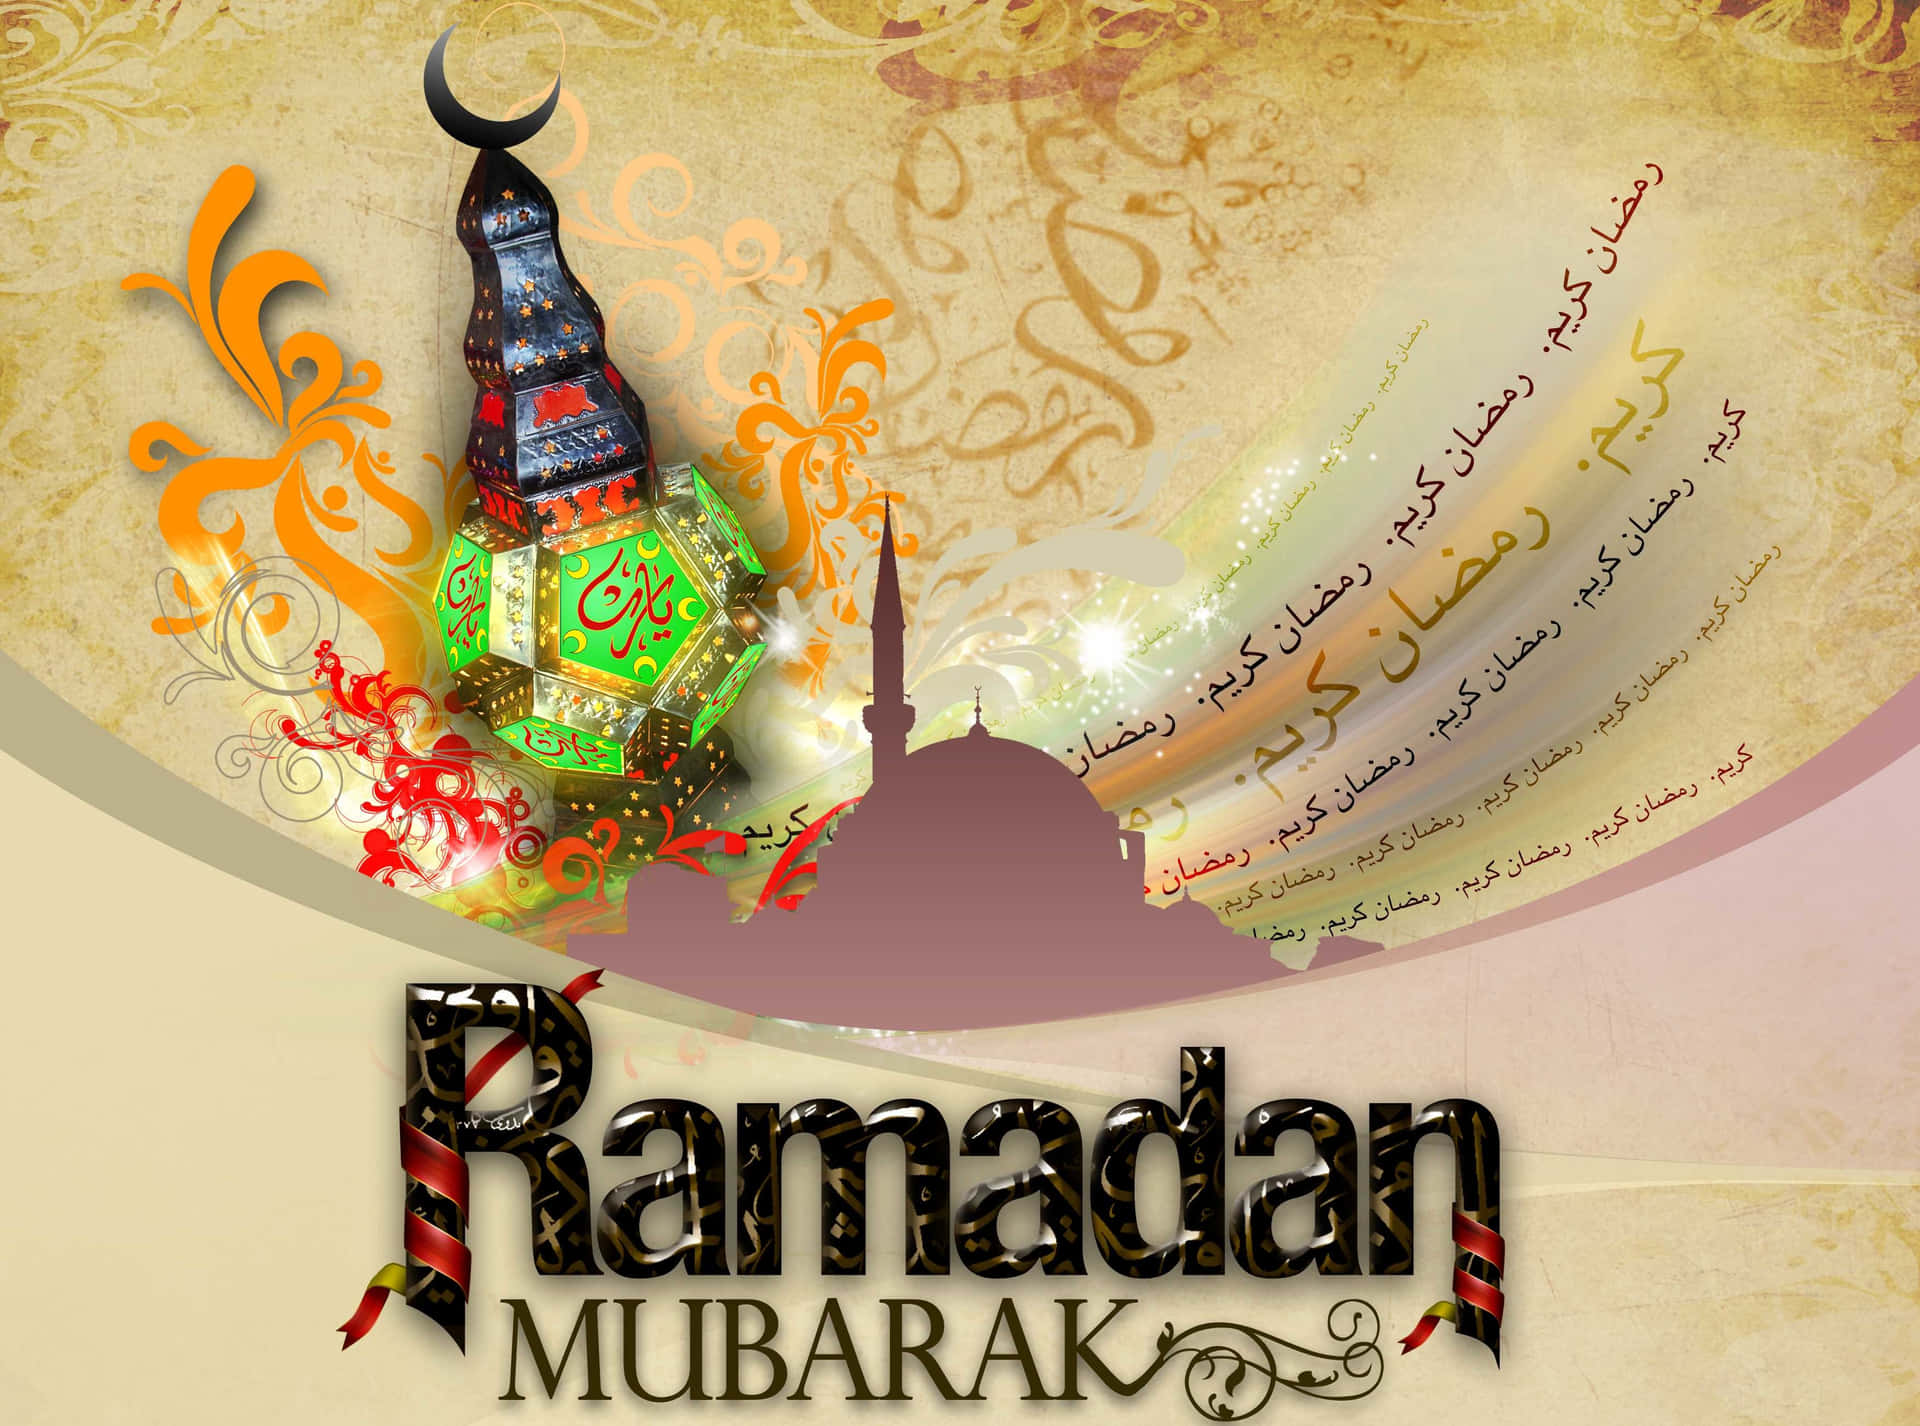 Imagemde Ramadan Mubarak